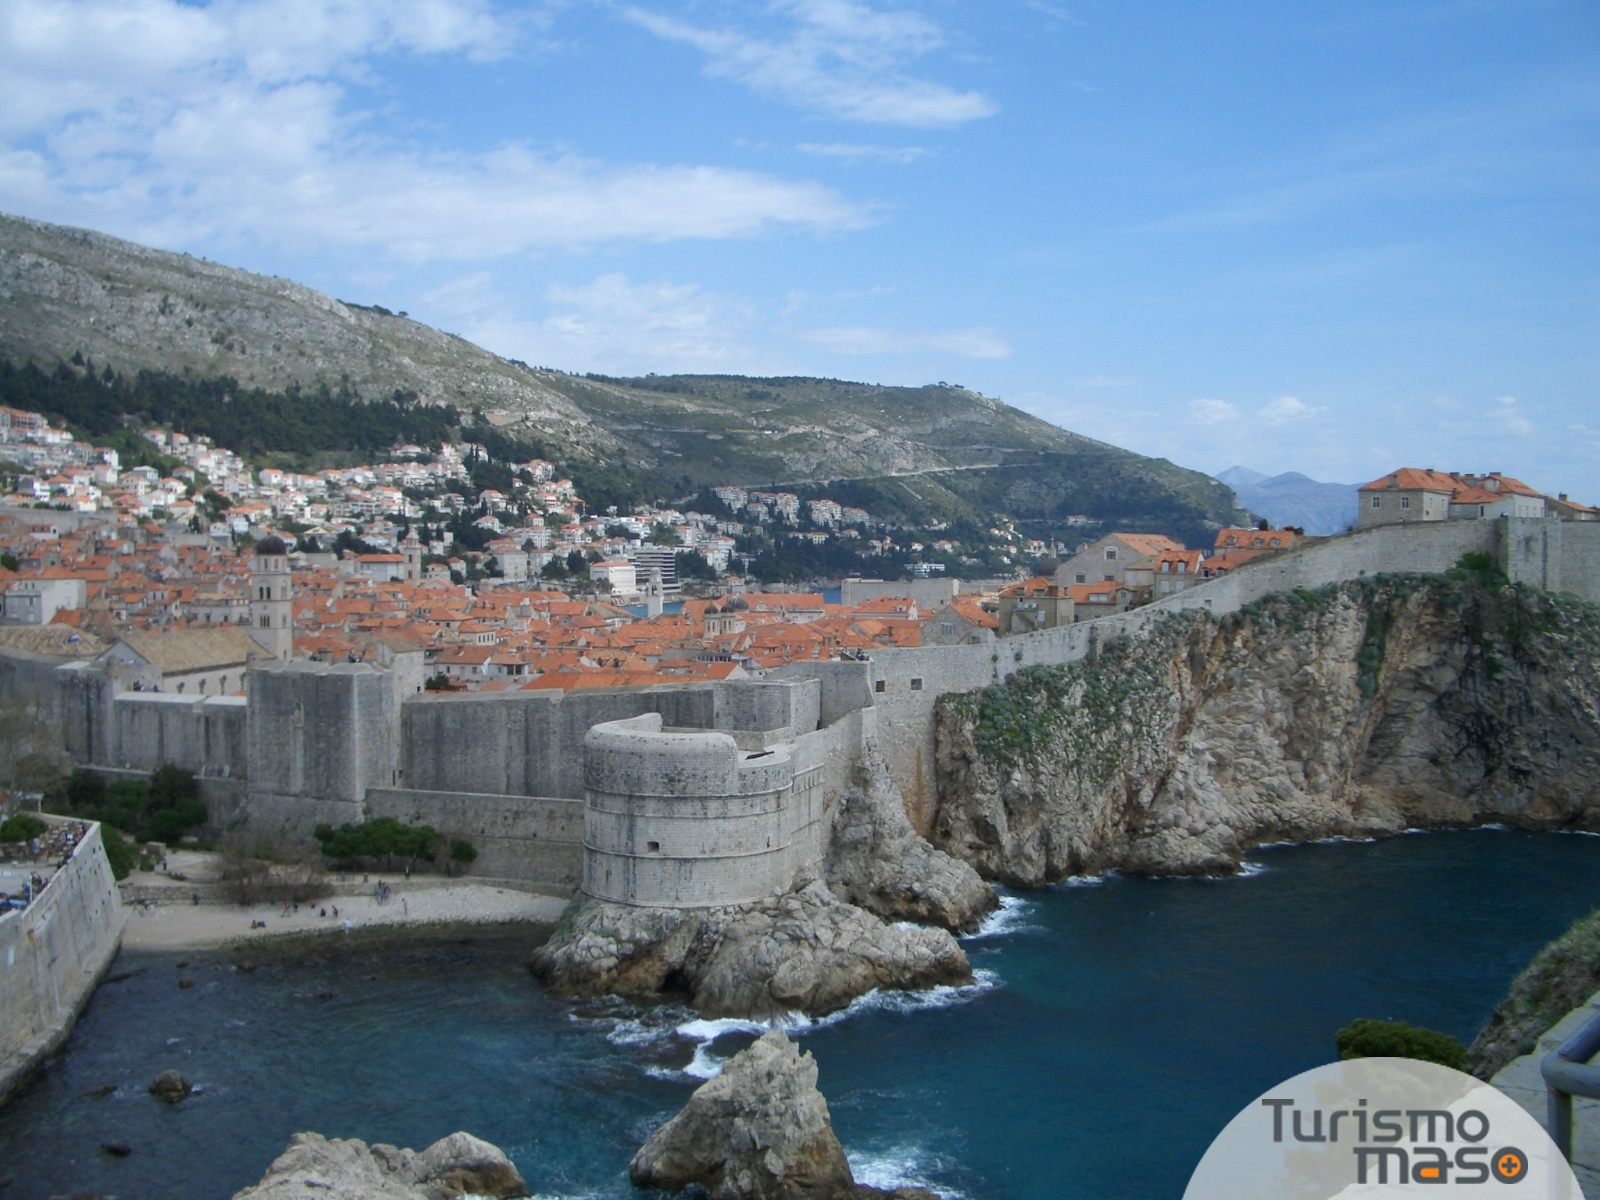  La ciudad vieja de Dubrovnik